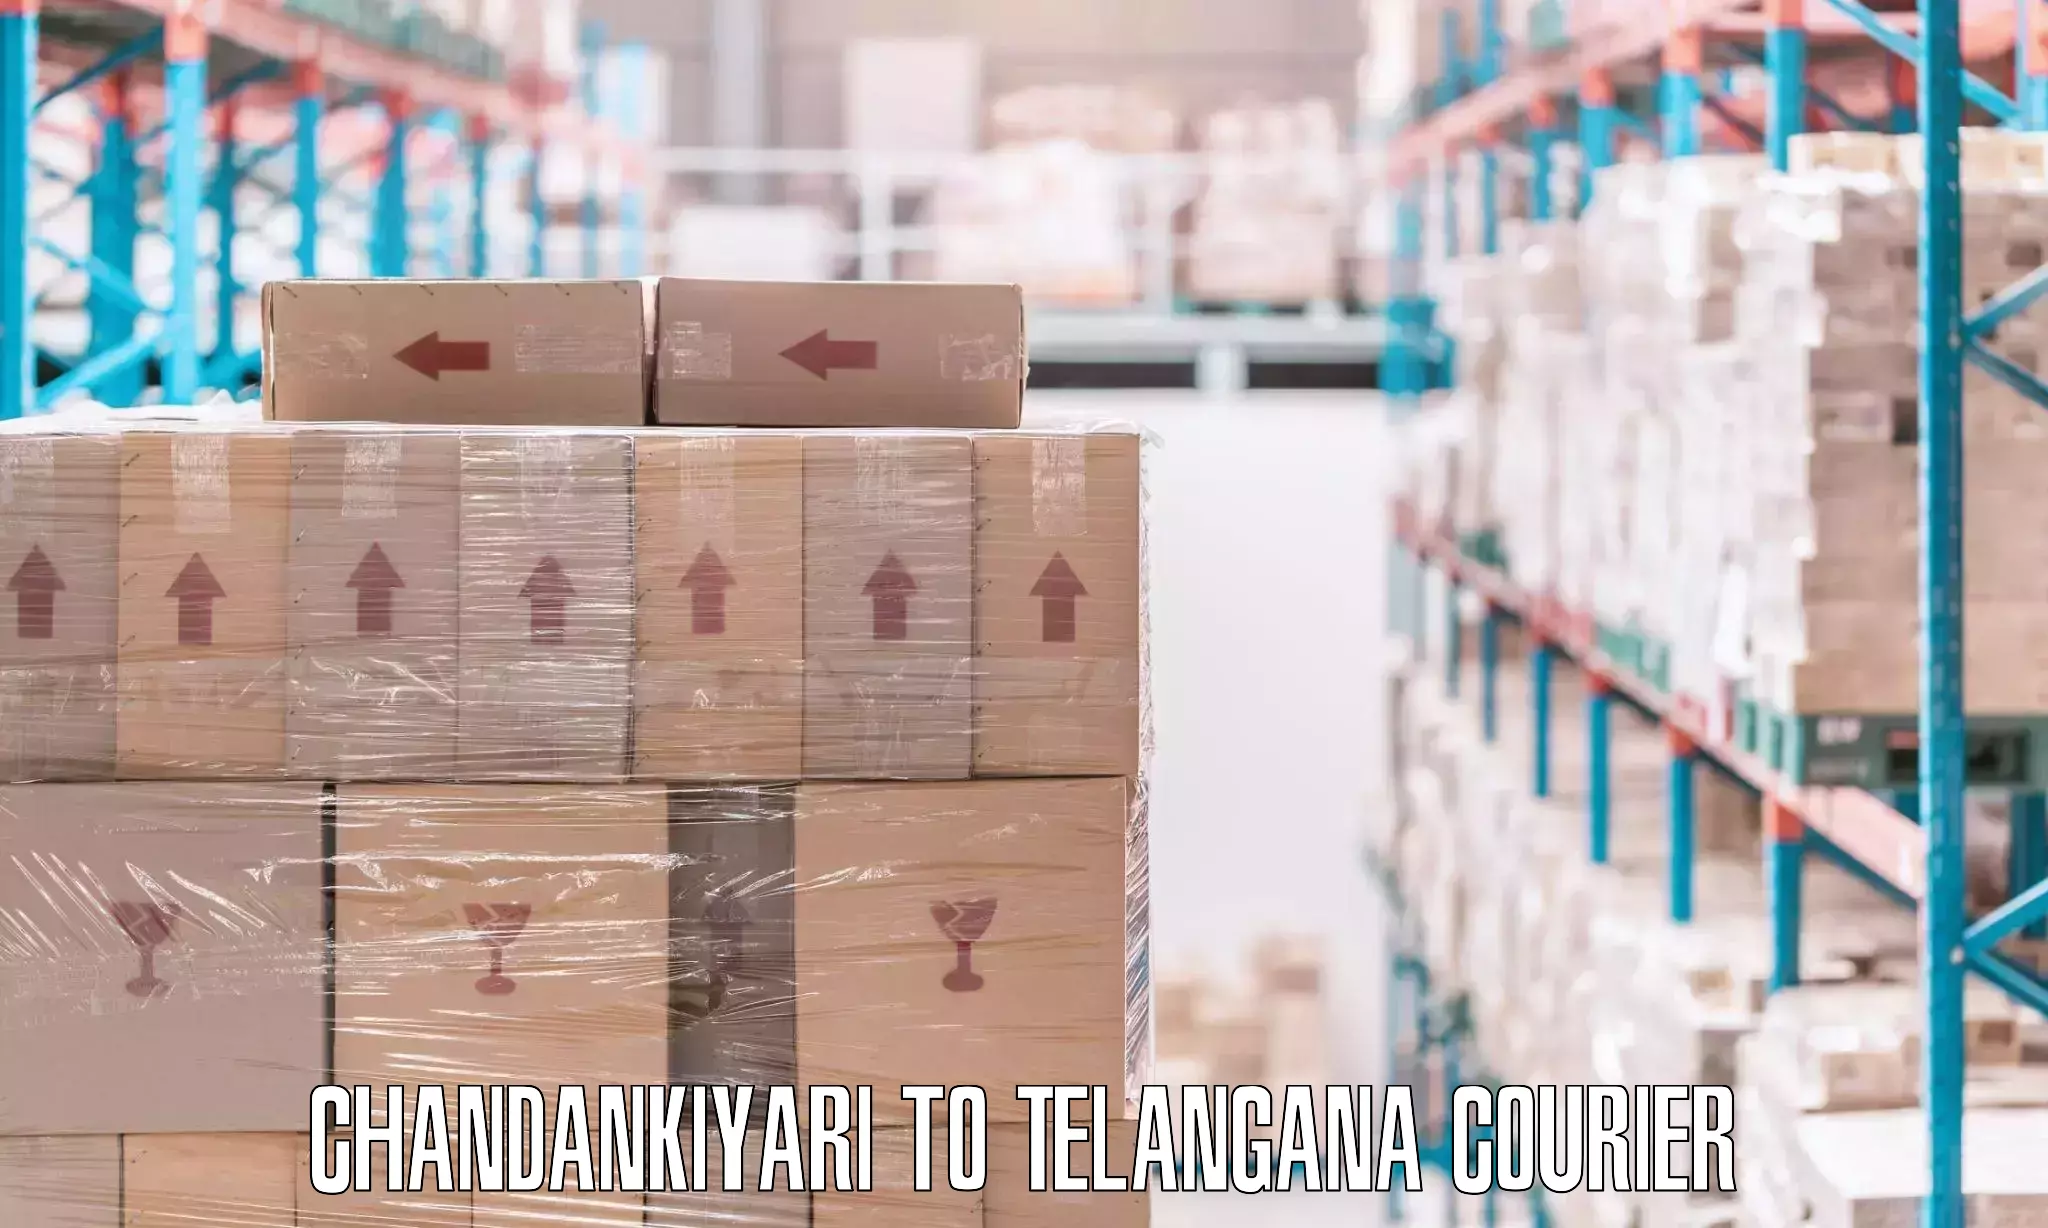 Efficient moving company Chandankiyari to Telangana